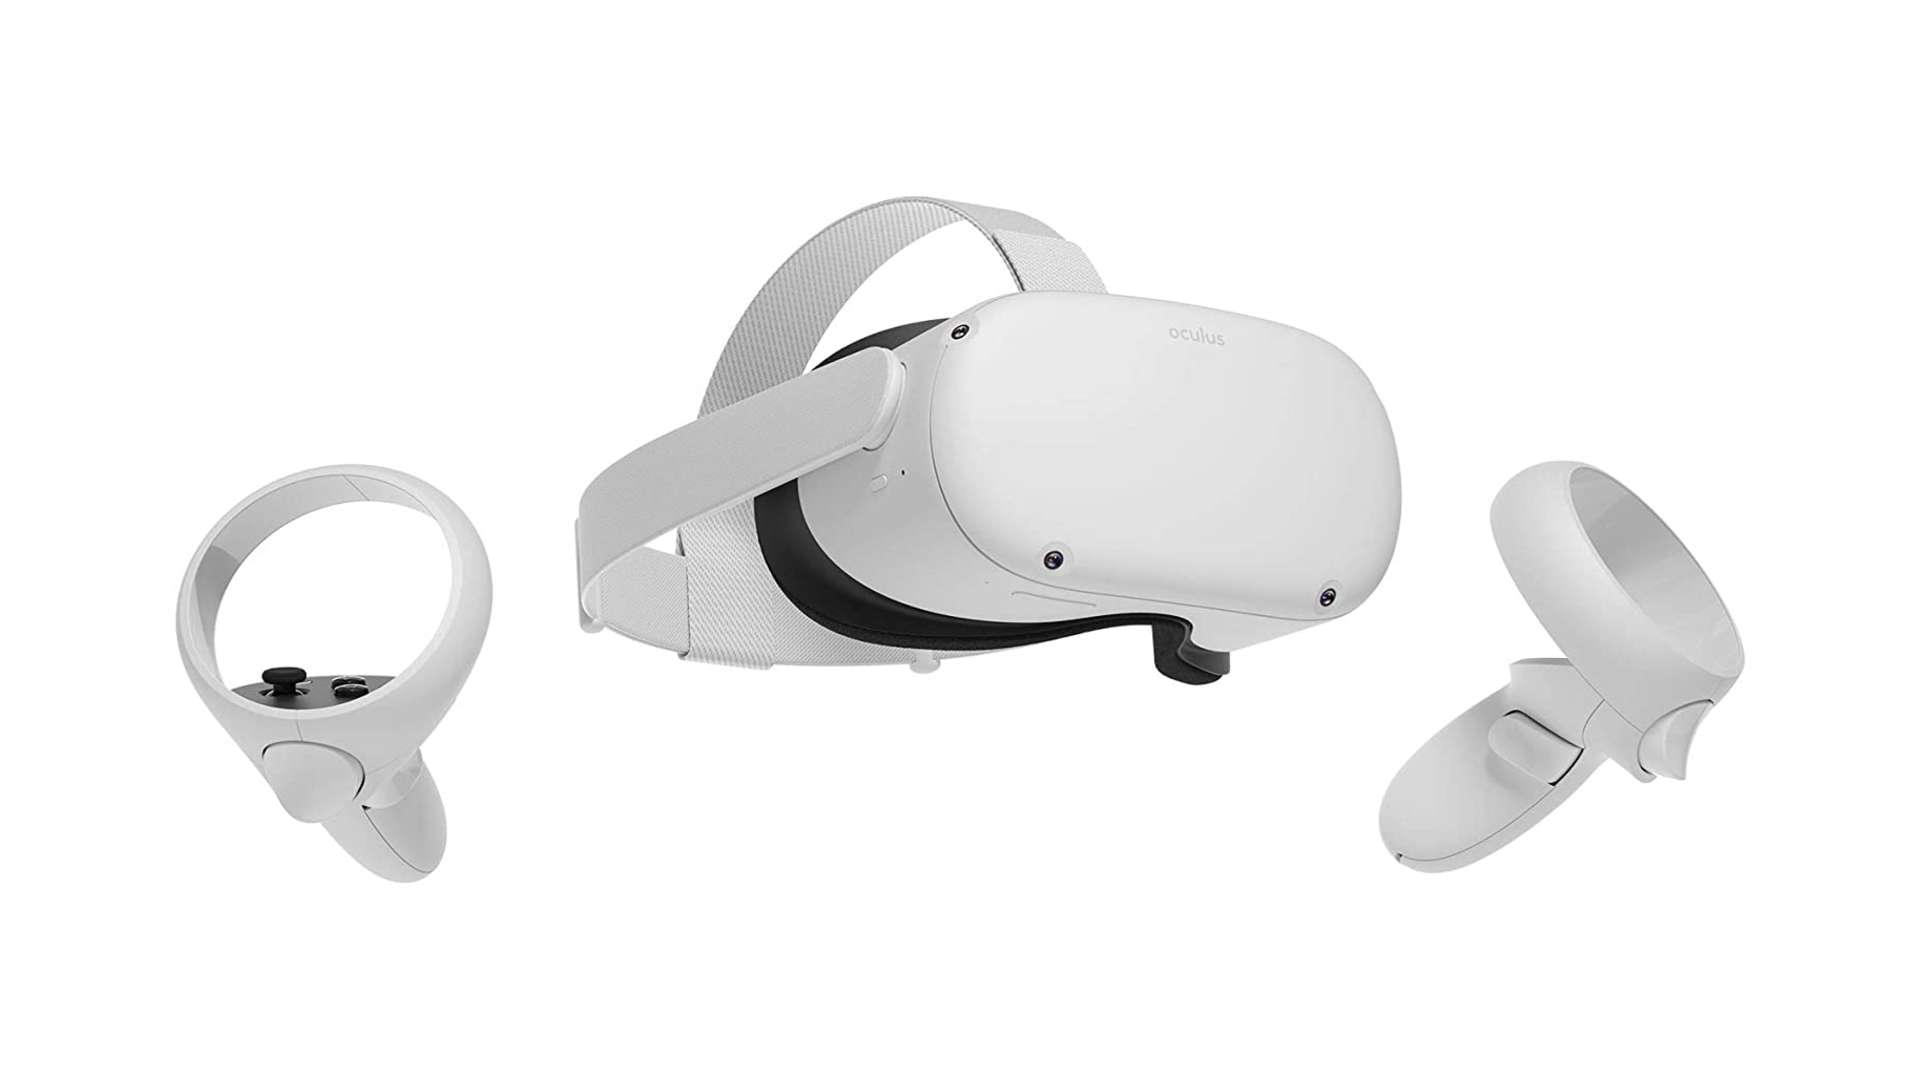 Los mejores auriculares VR: Oculus Quest 2 sobre fondo blanco